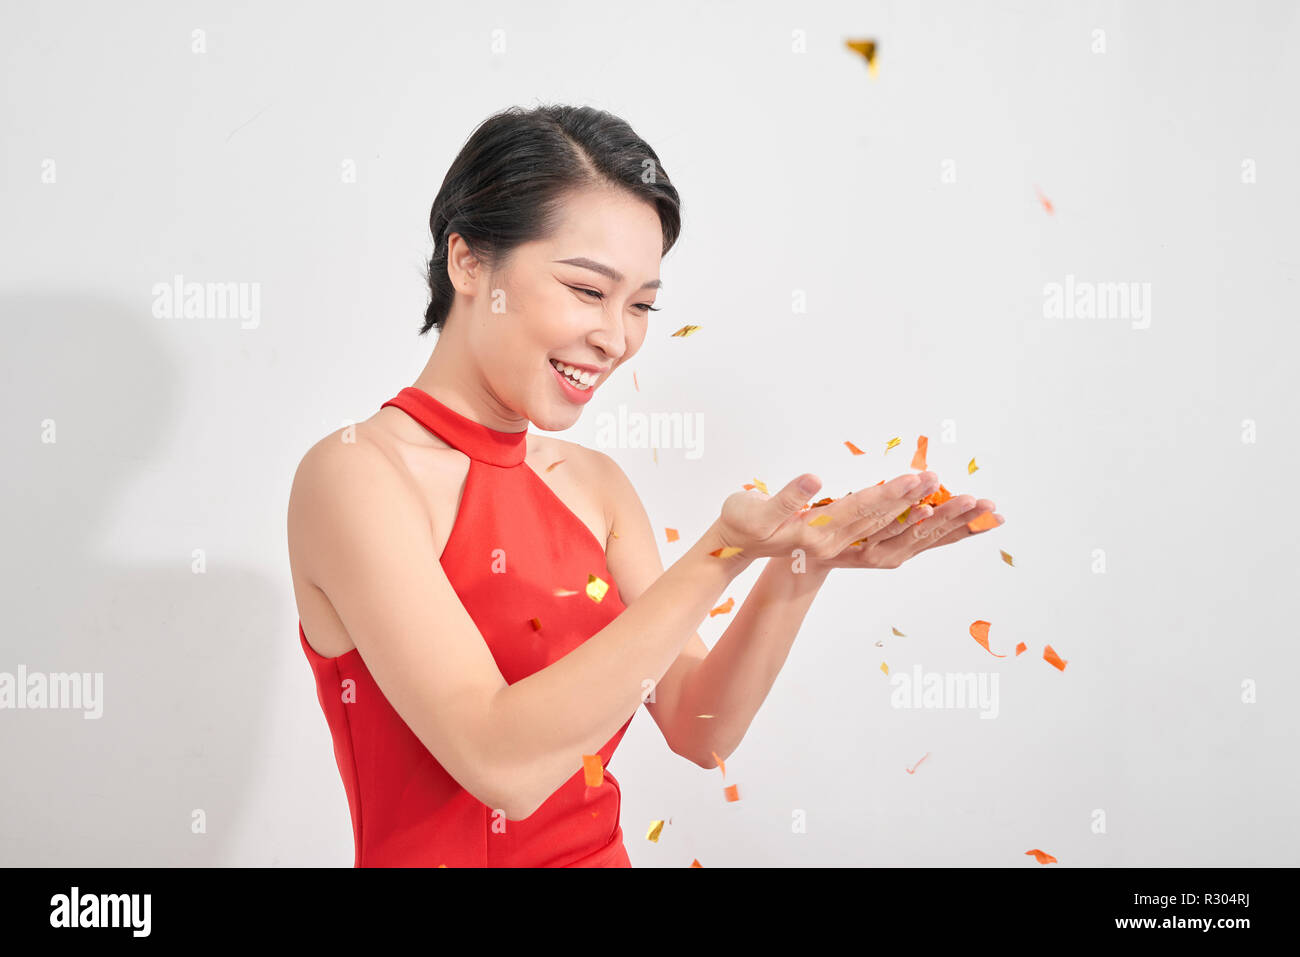 Portrait d'une belle fille robe porter en vertu de l'article pluie de confettis et de célébrer isolated over white background Banque D'Images